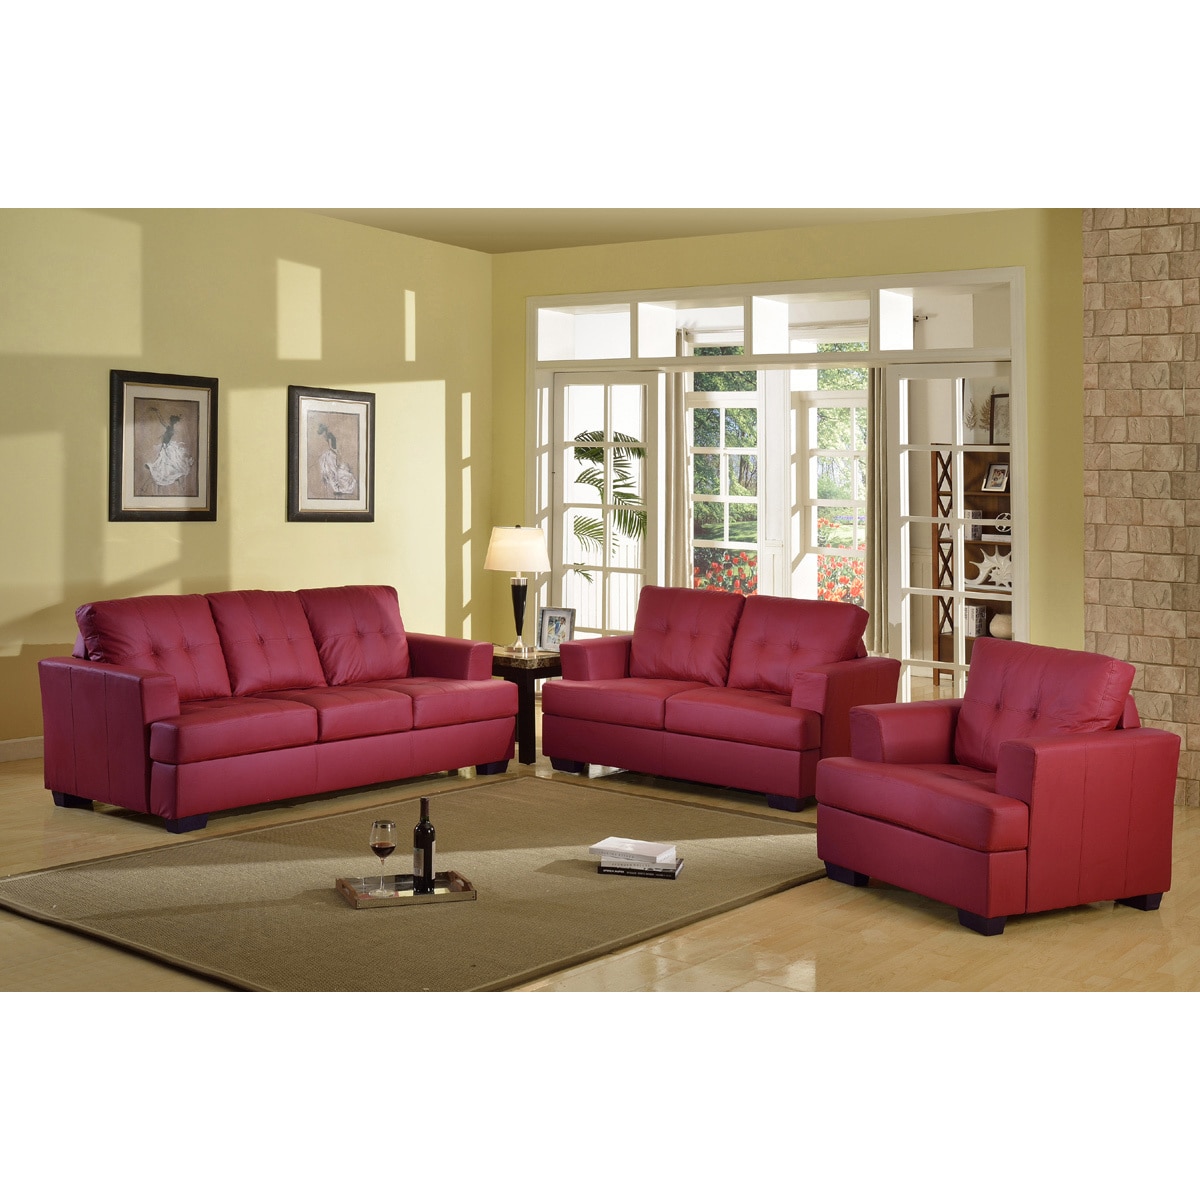 Shop Nova Red 3 Piece Living Room Set Overstock 7713053